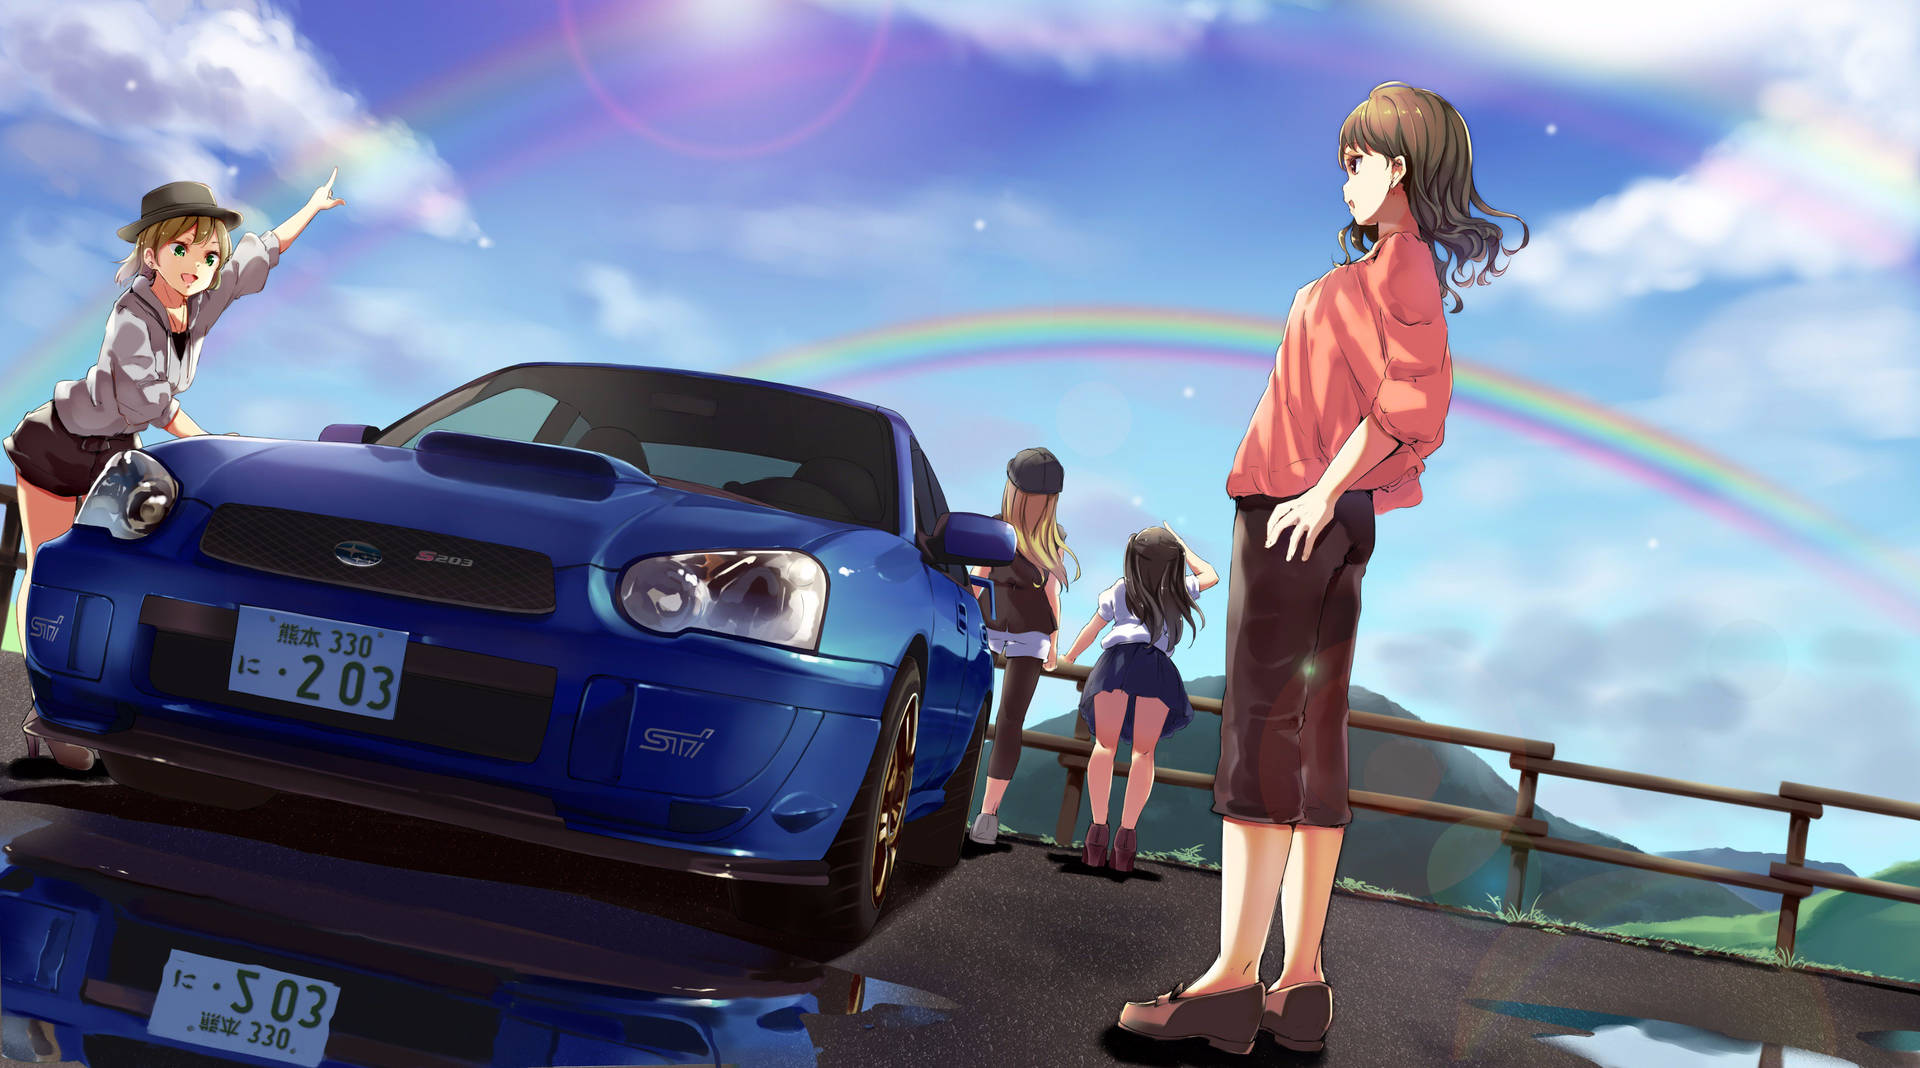 Anime Style Subaru Wrx Drifting Action Background